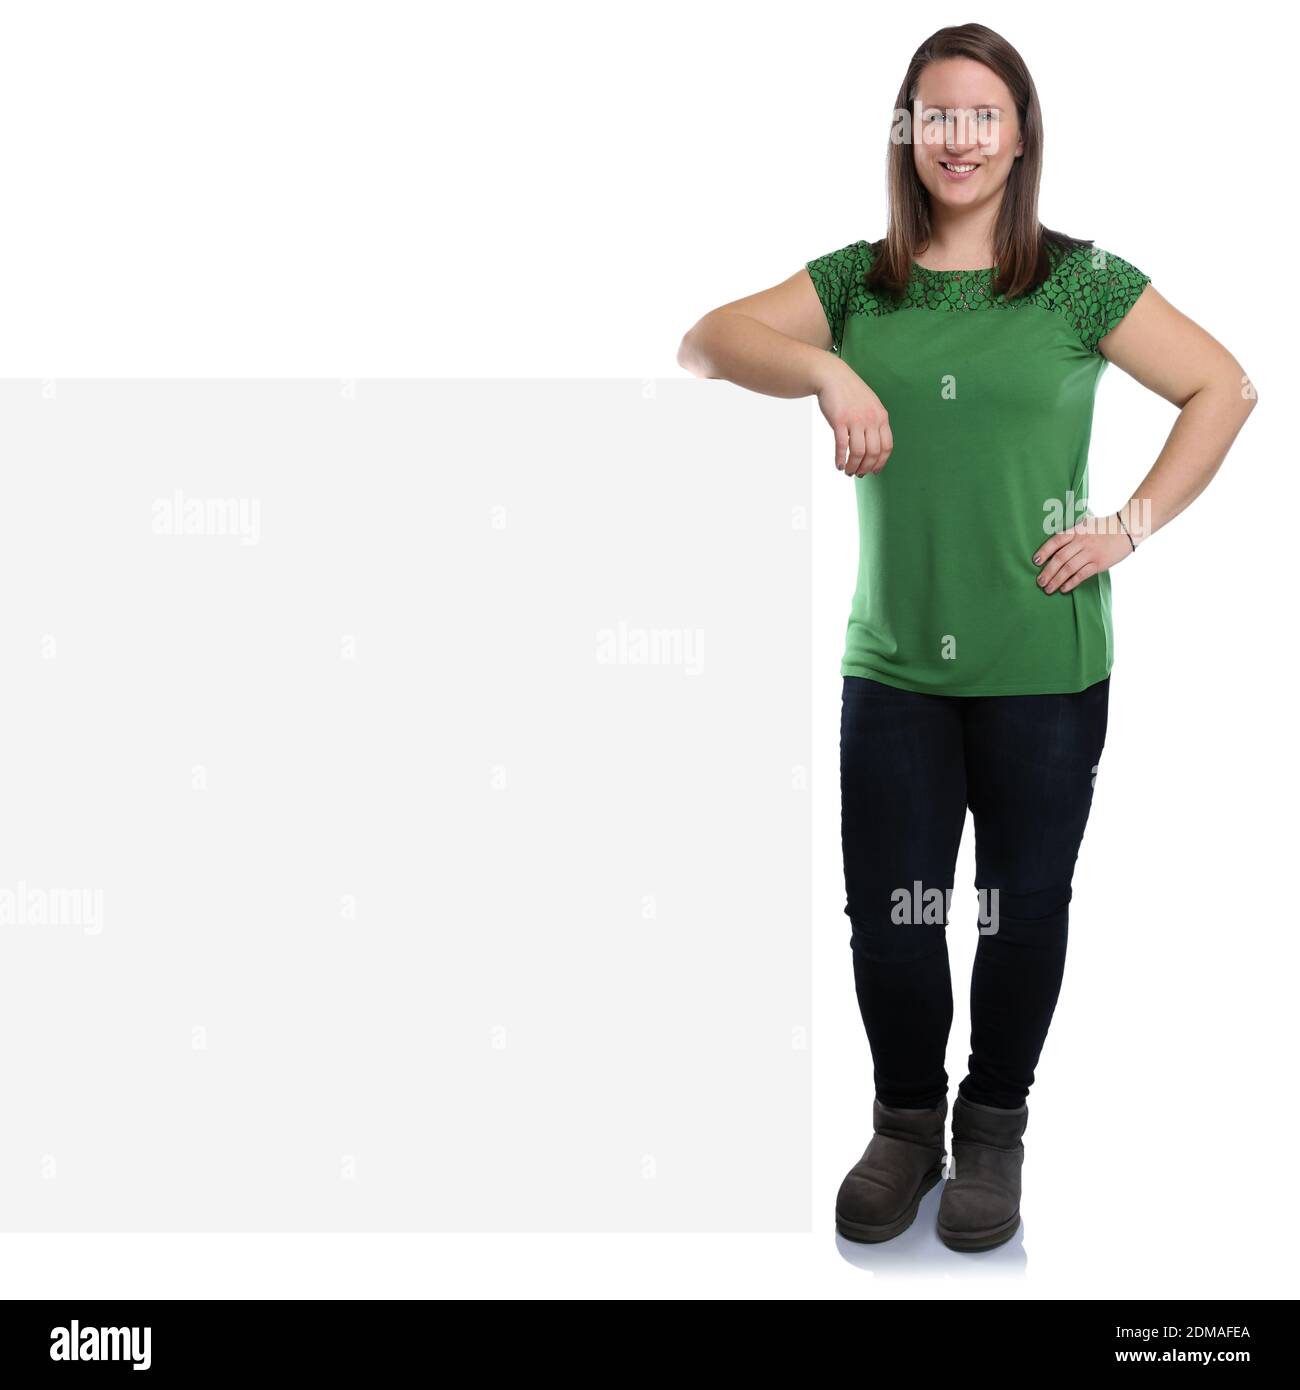 Junge Frau Werbung Marketing jung lachen mit leeres Schild leer Textfreiraum Copyspace Freisteller freigestellt auf weissem Hintergrund Foto Stock